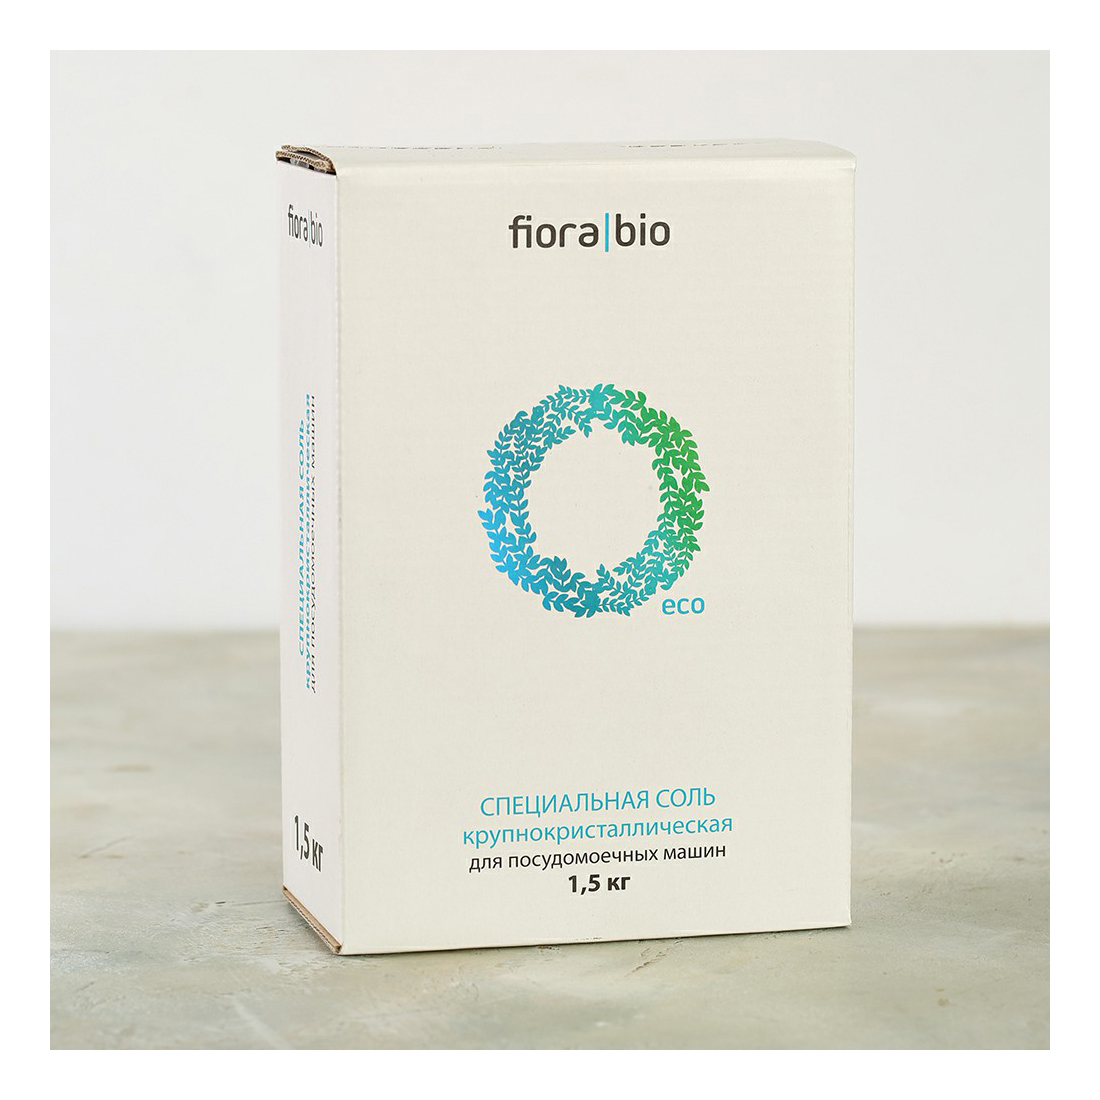 Экологичная соль для ПММ Fiora Bio высокой степени очистки, крупнокристаллическая, 1,5 кг